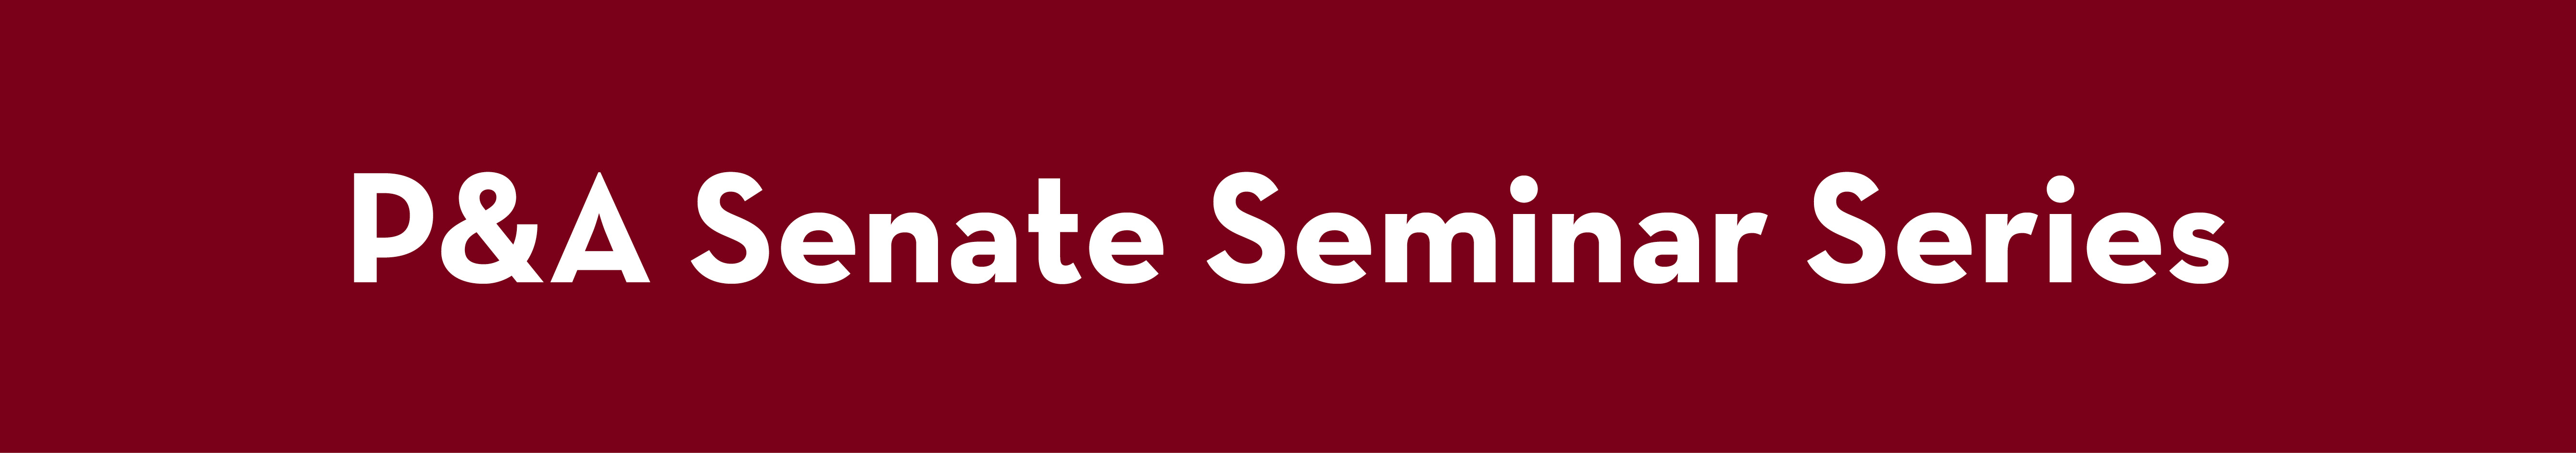 P&A Senate Seminar Series Banner